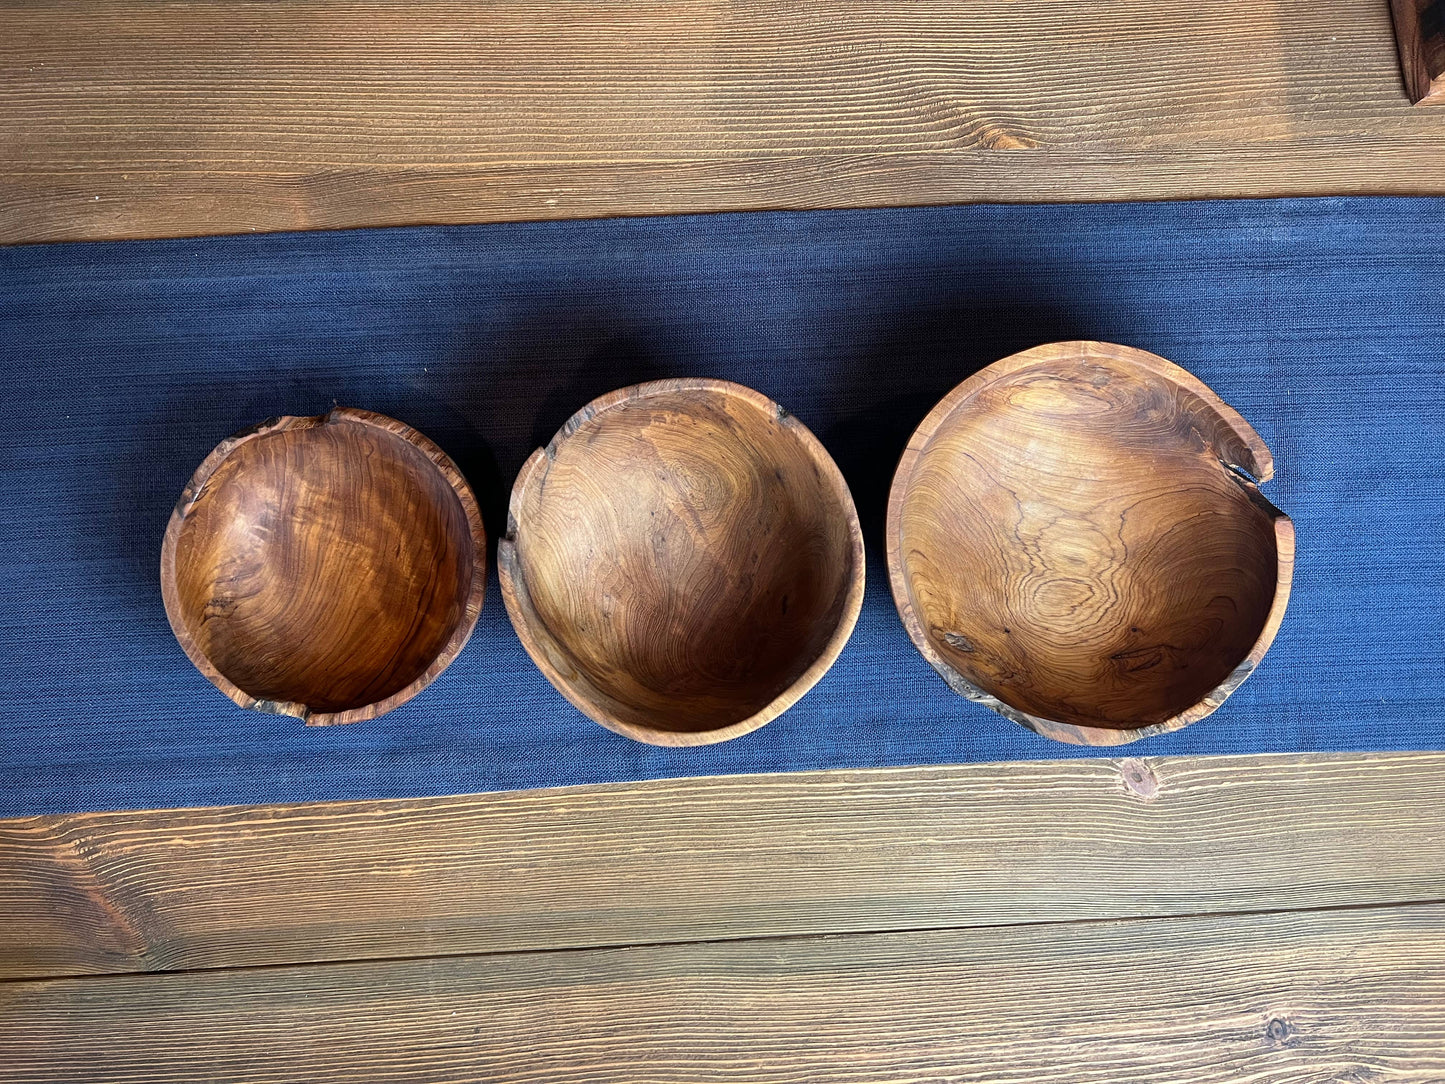 Live Edge Bowls - Nesting Set of 3 - Medium Size